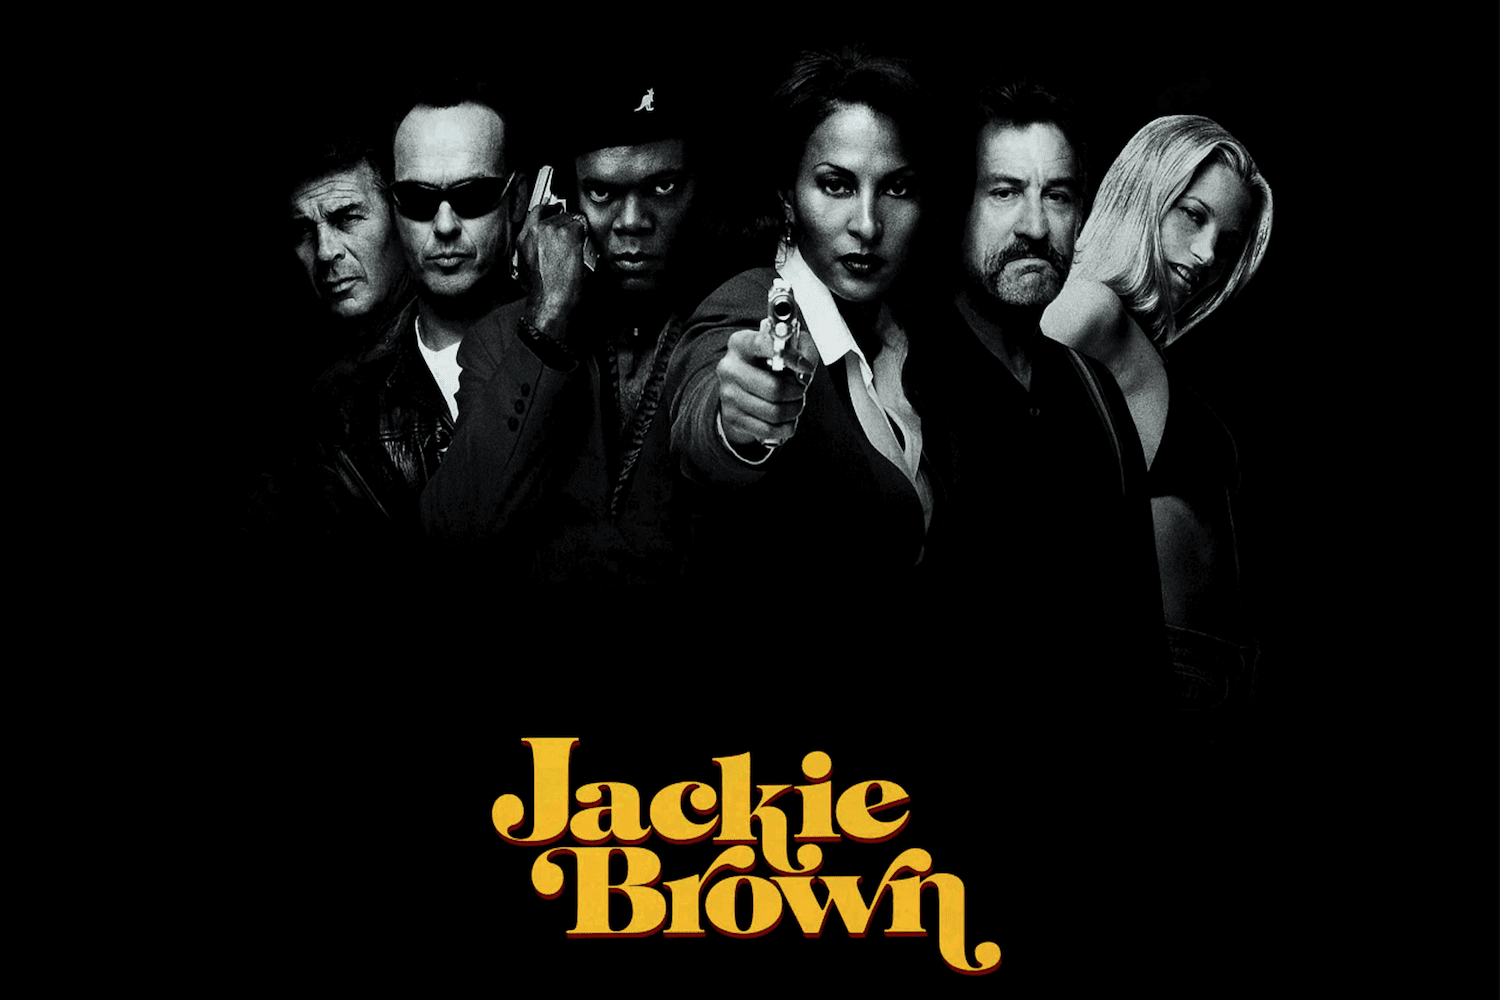 1997 Jackie Brown